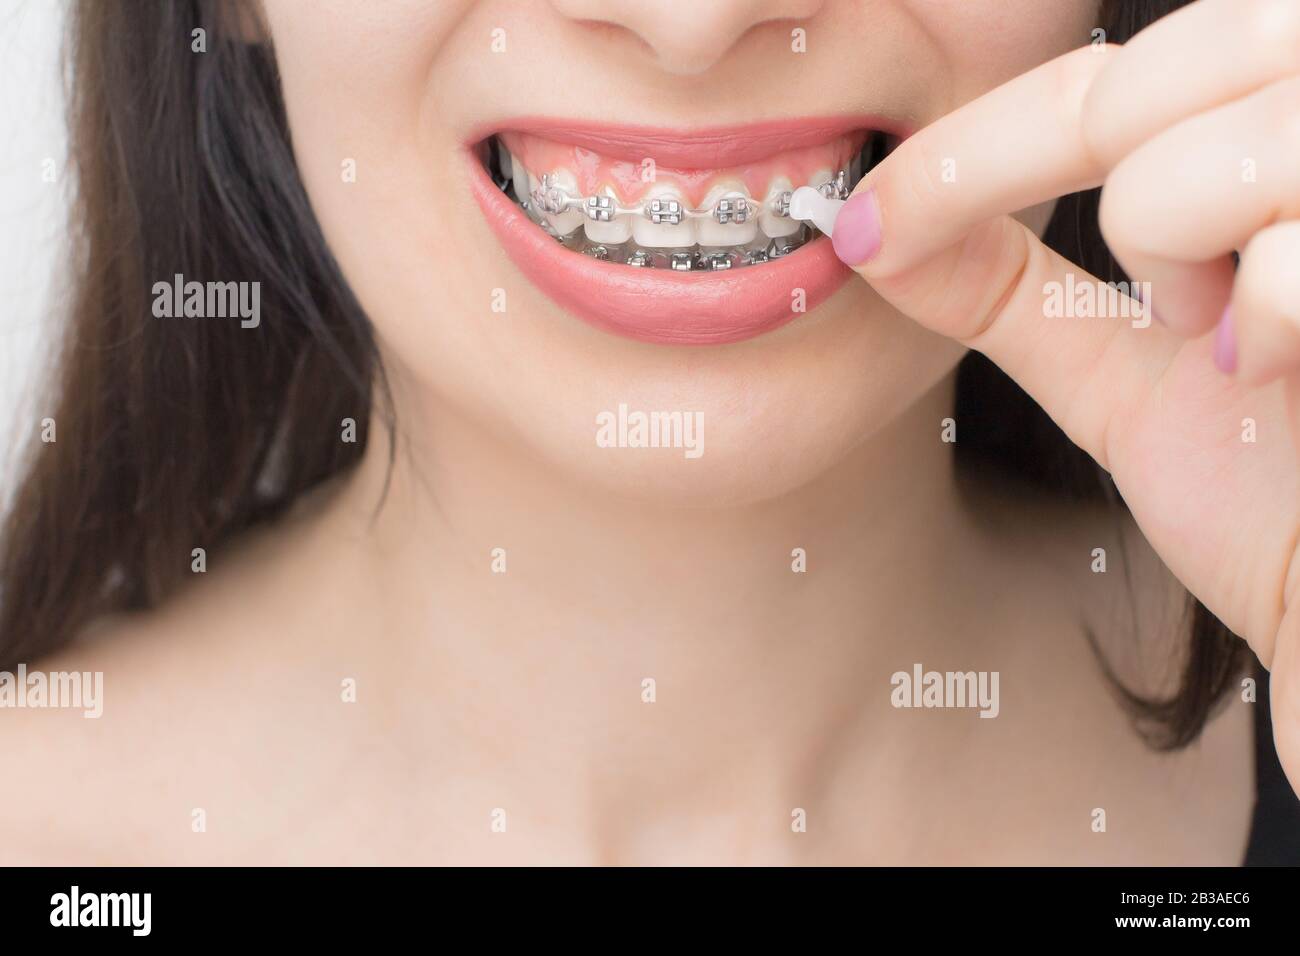 Cera ortodontica immagini e fotografie stock ad alta risoluzione - Alamy